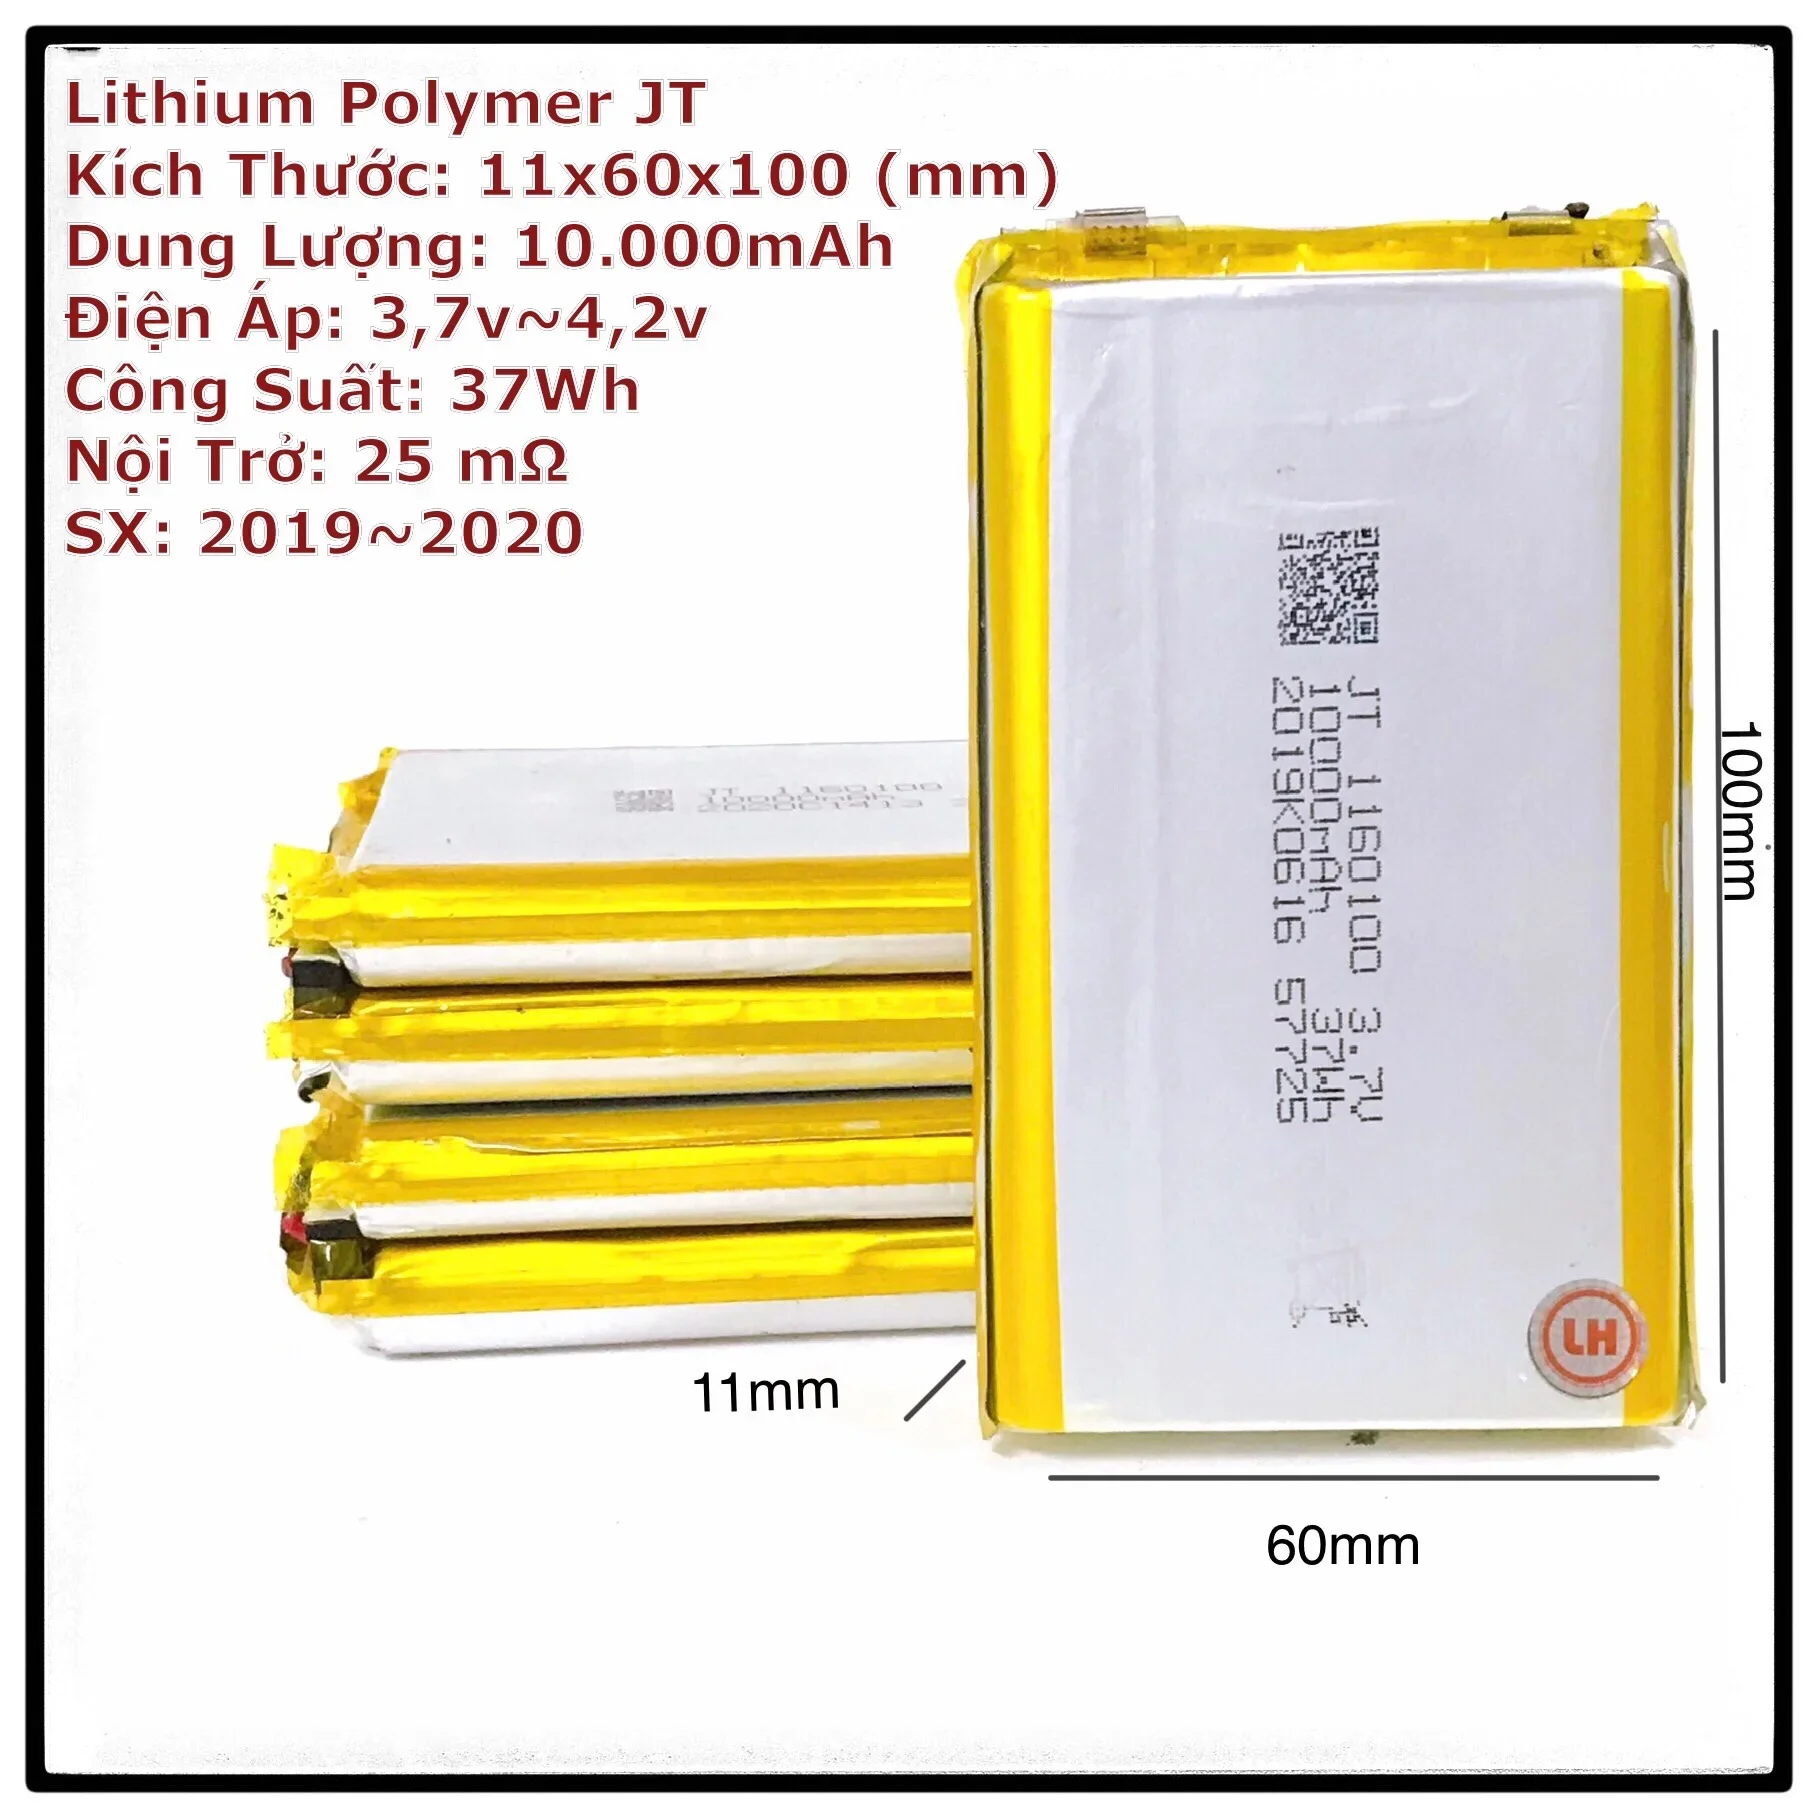 Pin Sạc Lithium Polymer JT 1160100 Dung Lượng 10.000mAh 3,7Volt 37Wh Nội trở <15mOhm Pin Lipo Mới Cứng Xịn Xò Ảnh Chụp Thật 100%